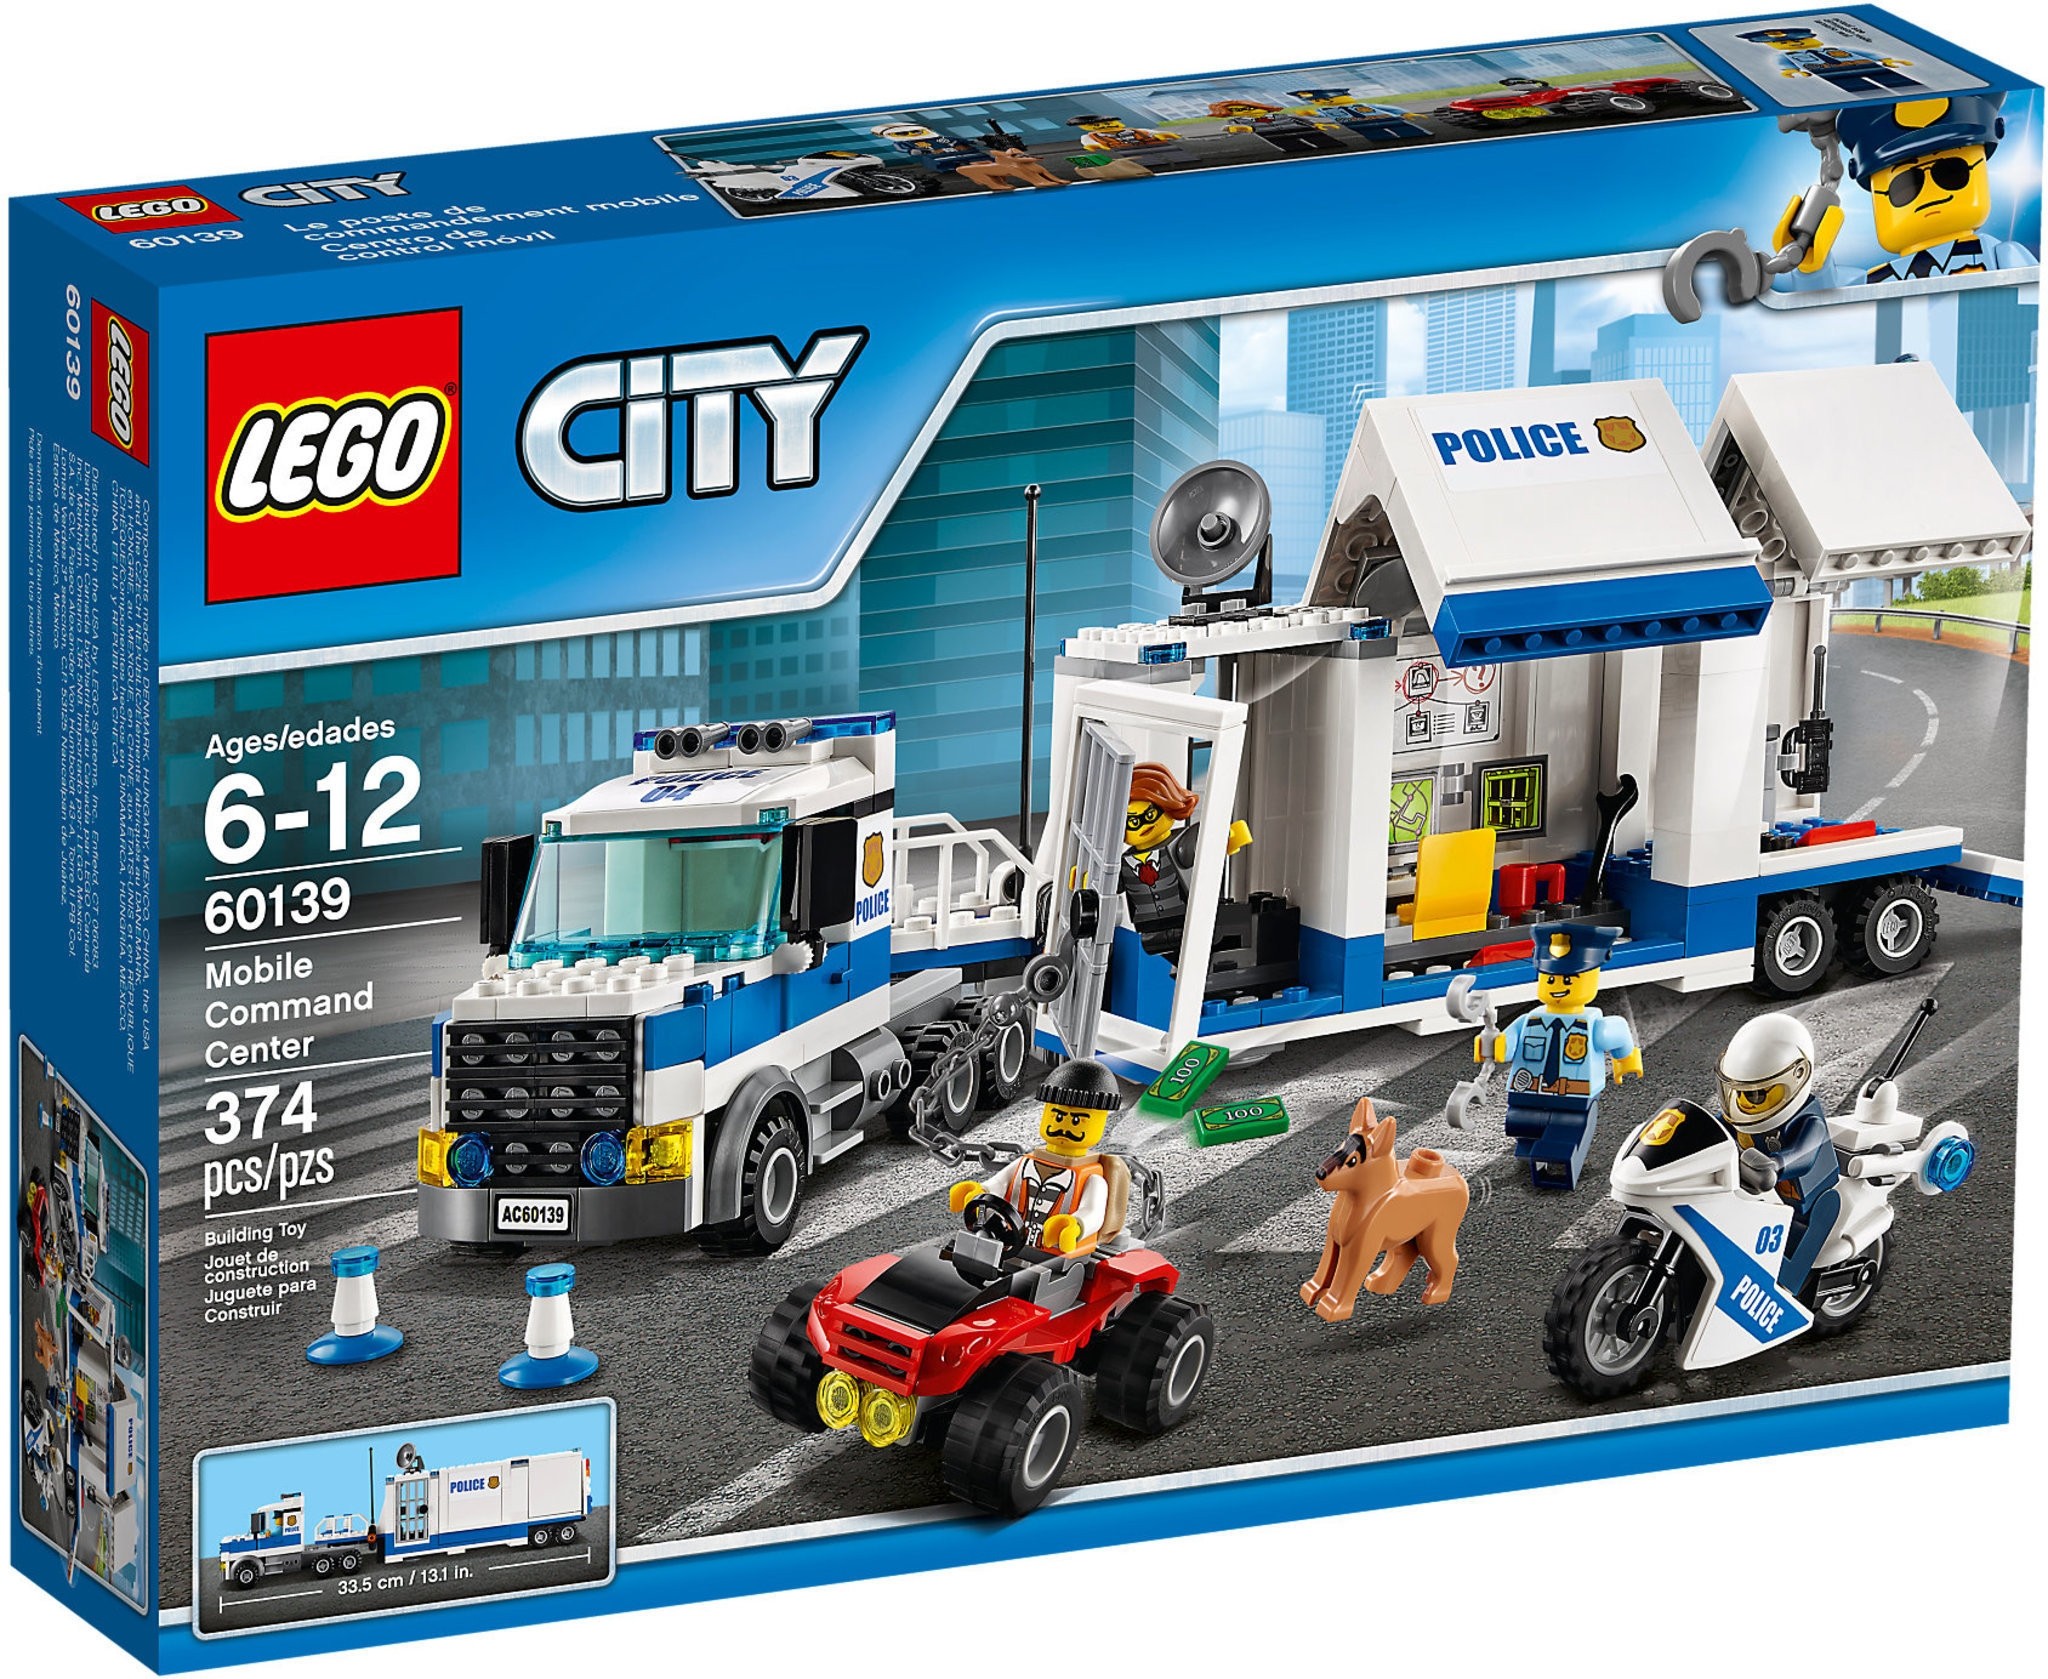 Lego City Mobile Command Center